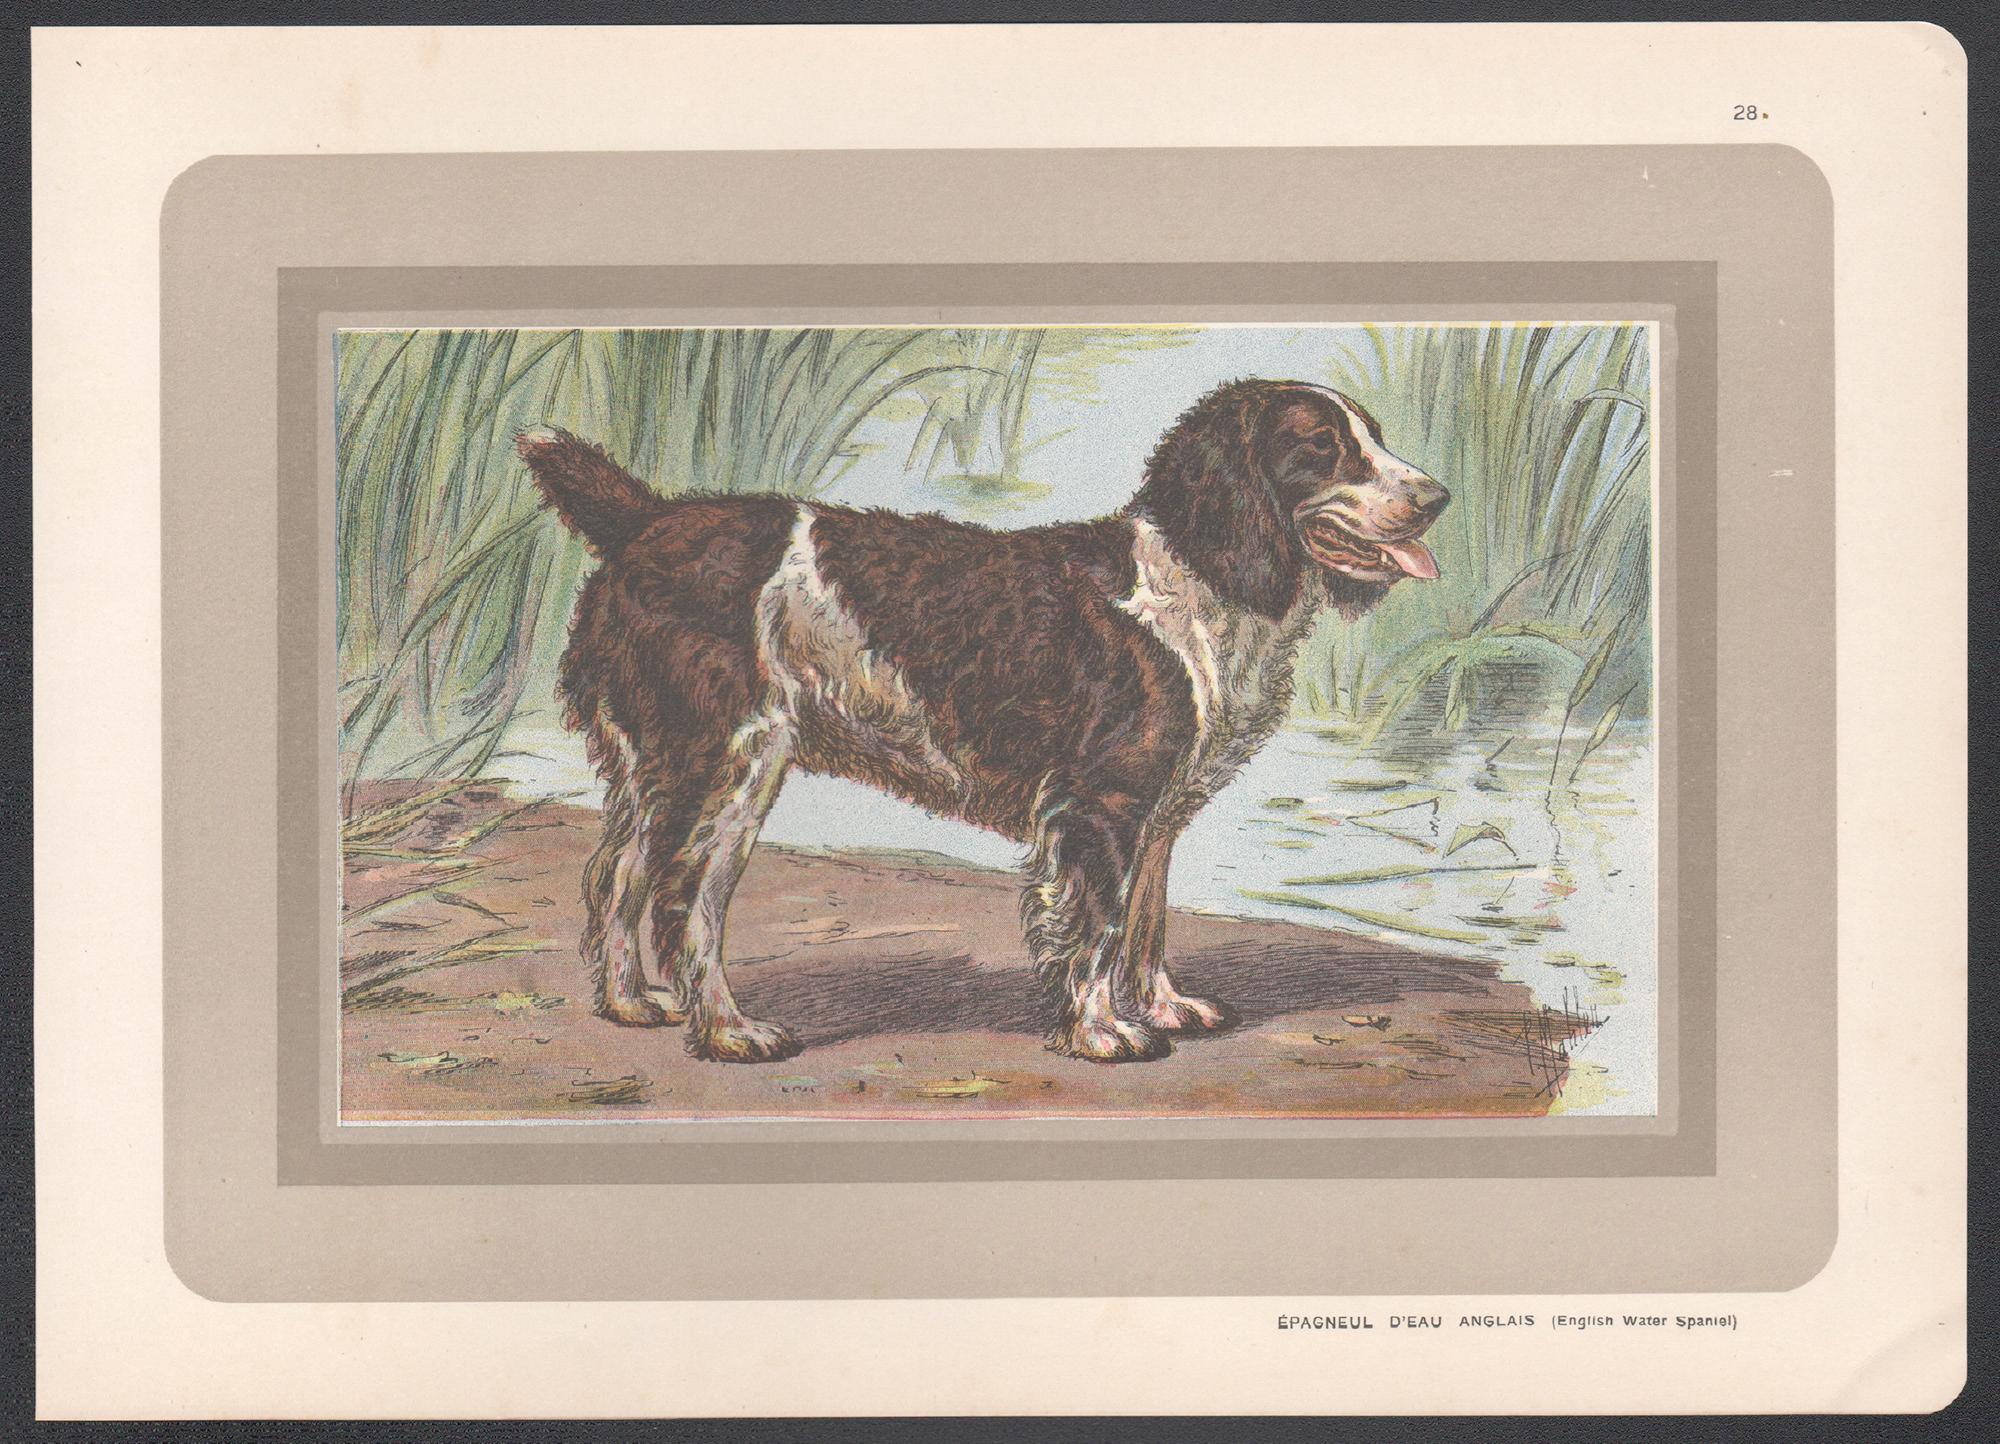 Impression chromolithographie anglaise d'un épagneul anglais, chien de chasse français, 1931 - Print de P. Mahler